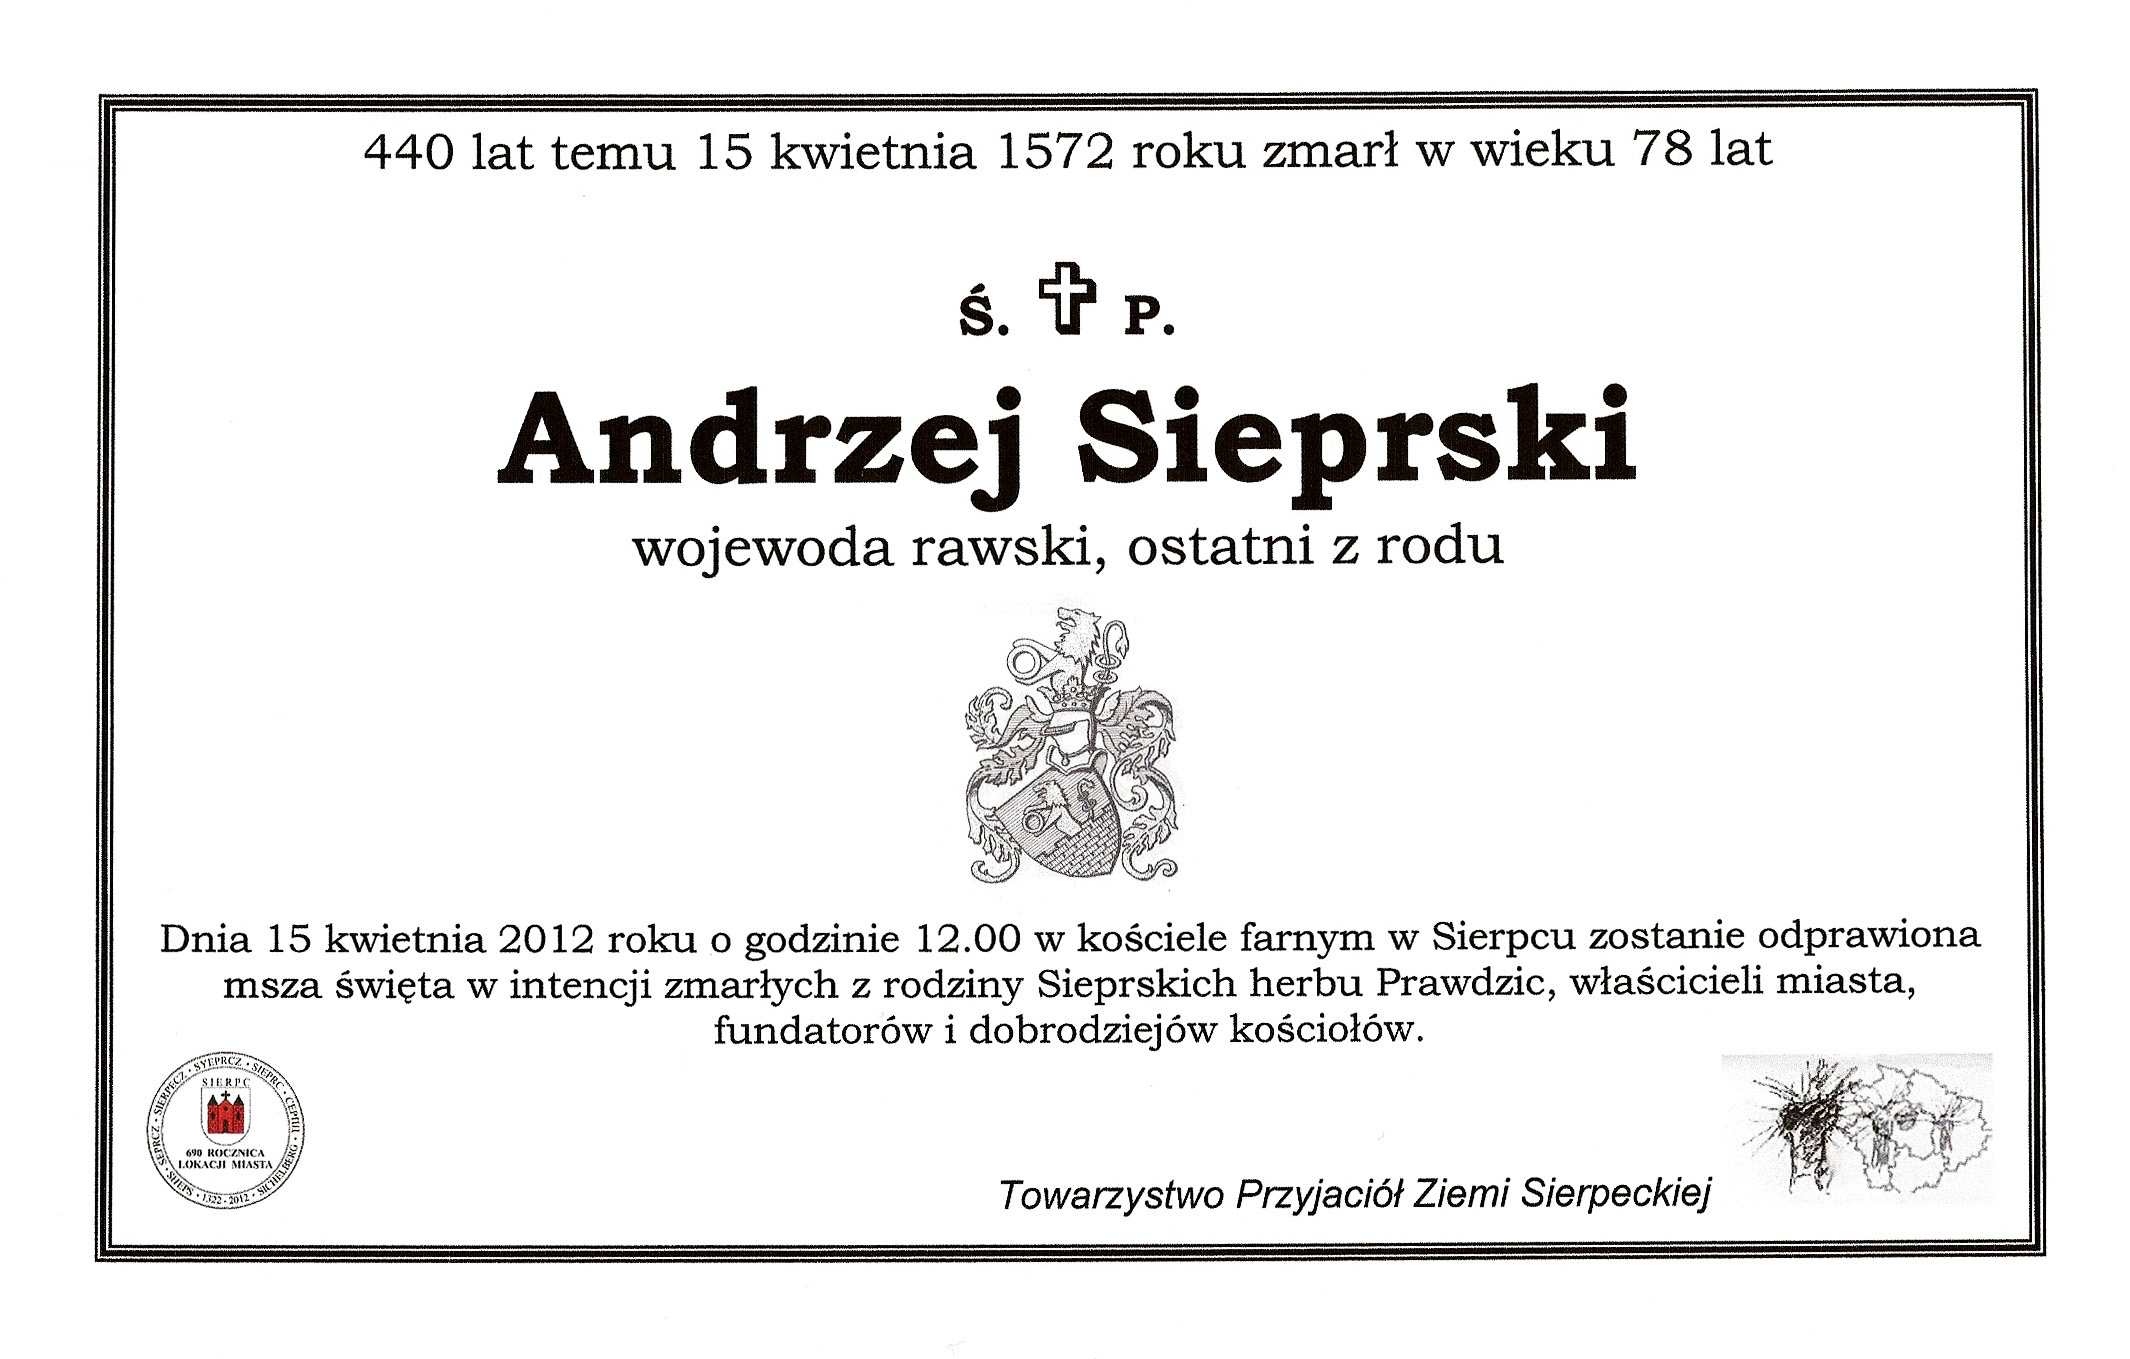 Zawiadomienie z 2012 roku informujce o mszy za Andrzeja Sieprskiego